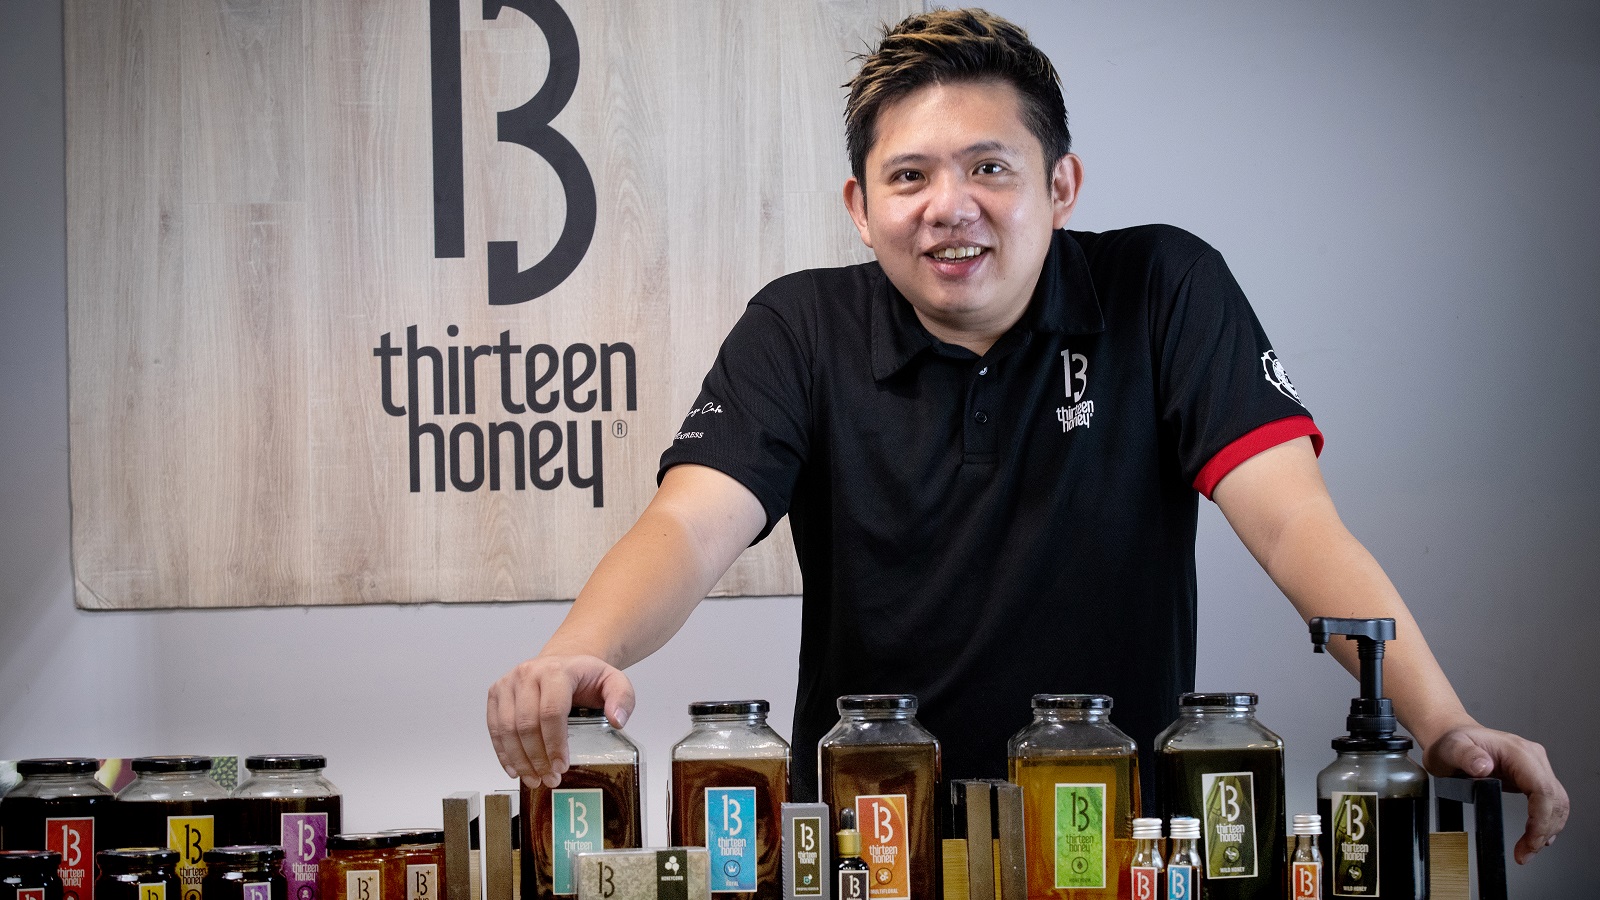 39-year-old Mr Javier Lau, CEO of 13 Honey